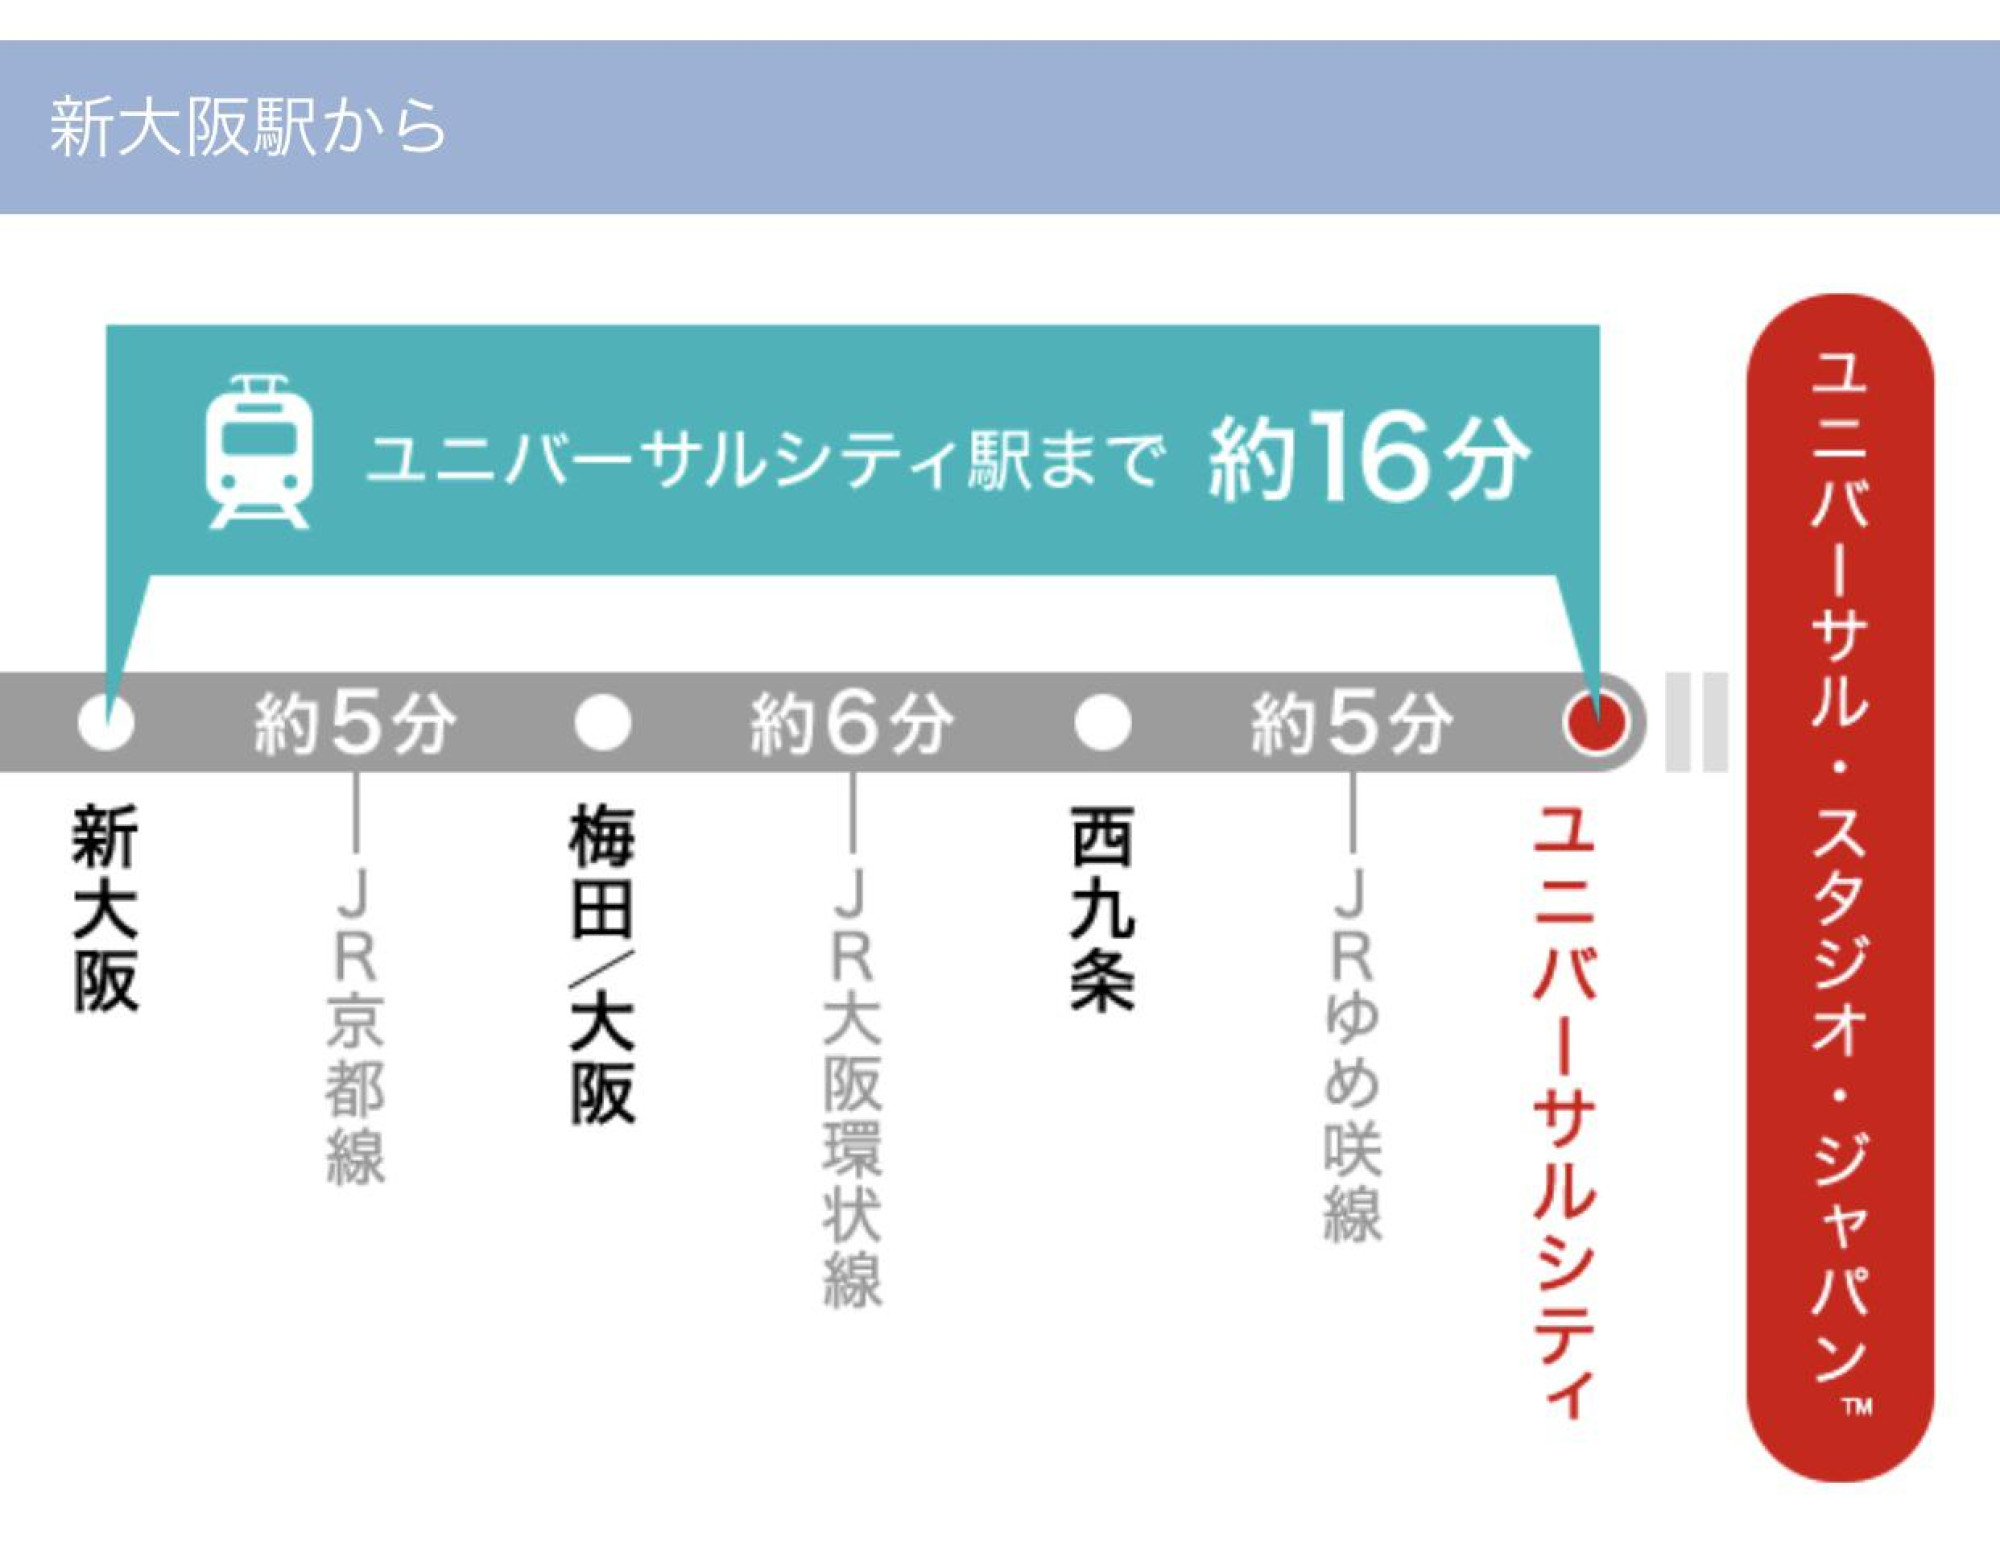 新幹線は新大阪駅が最寄りです キャステル Castel ディズニー情報